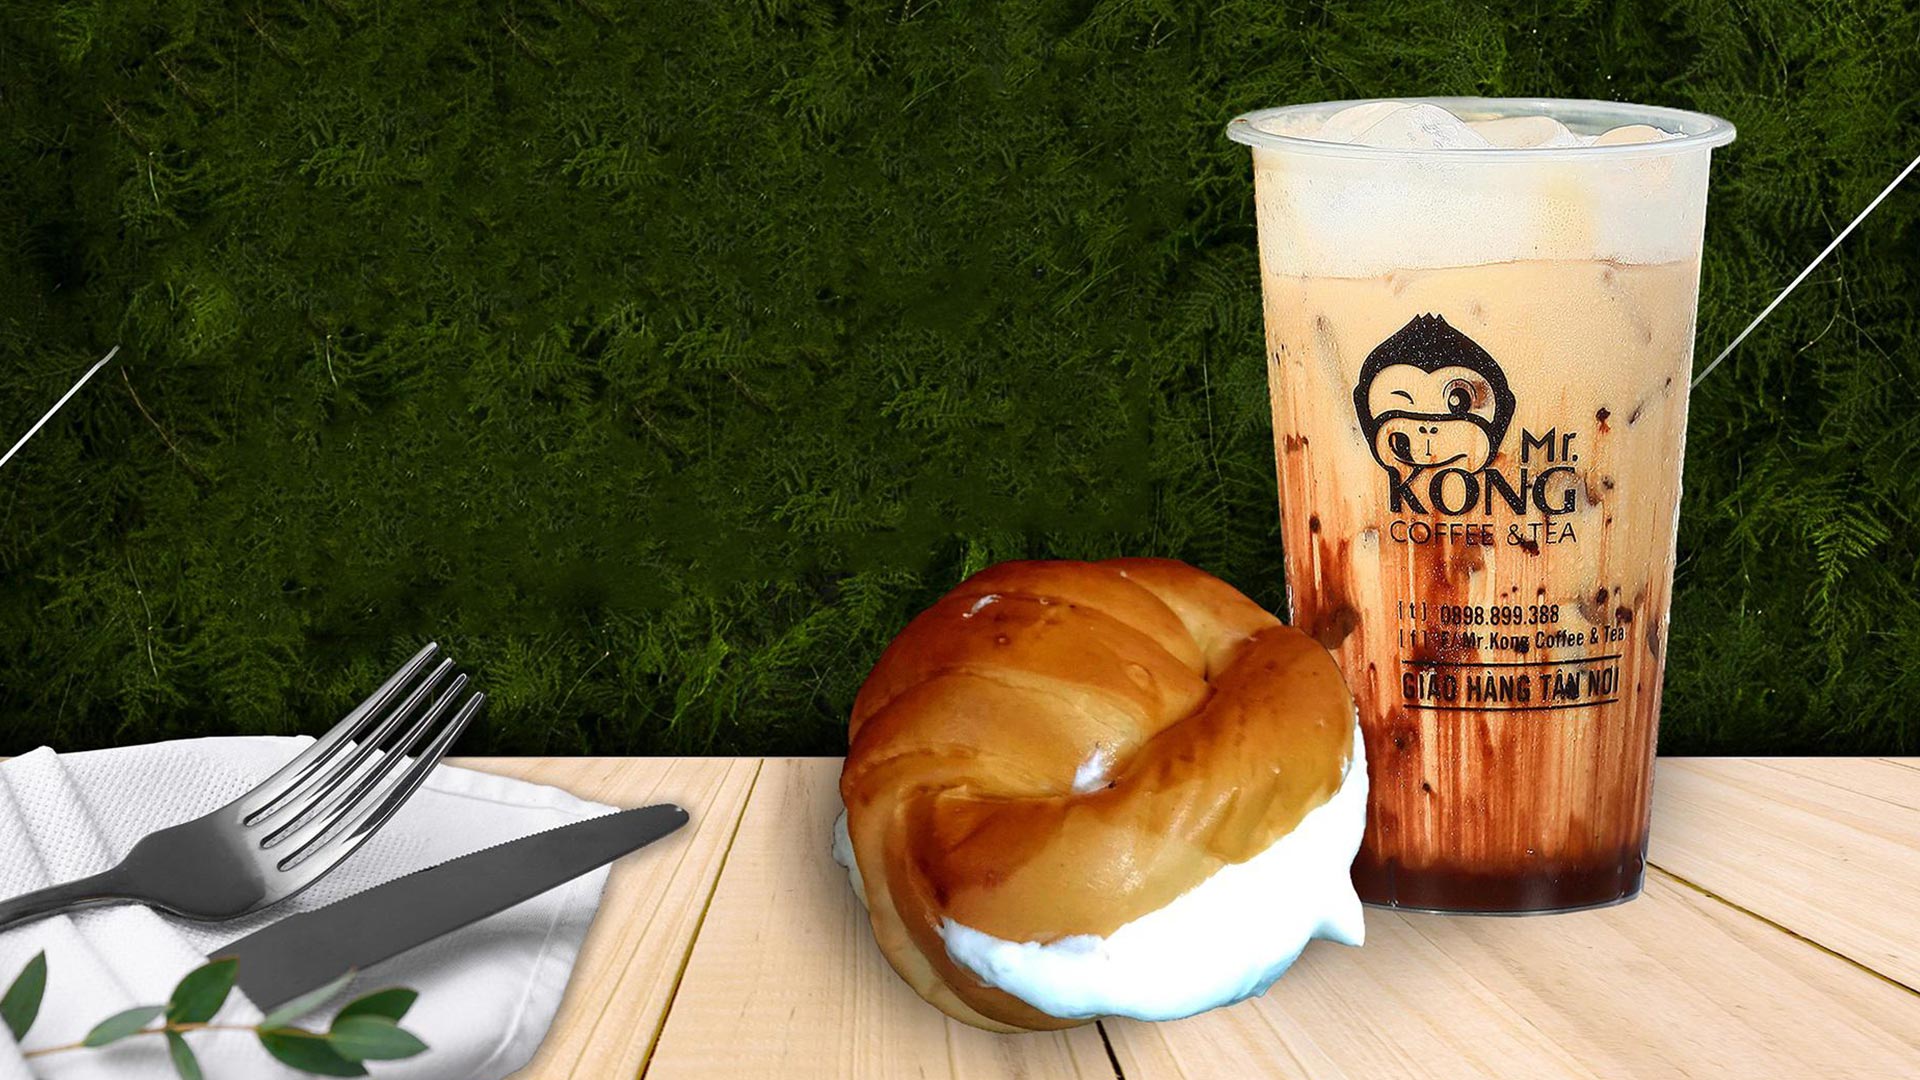 Tải app VinID nhận combo bánh và trà sữa chỉ 29.000 đồng tại Mr Kong